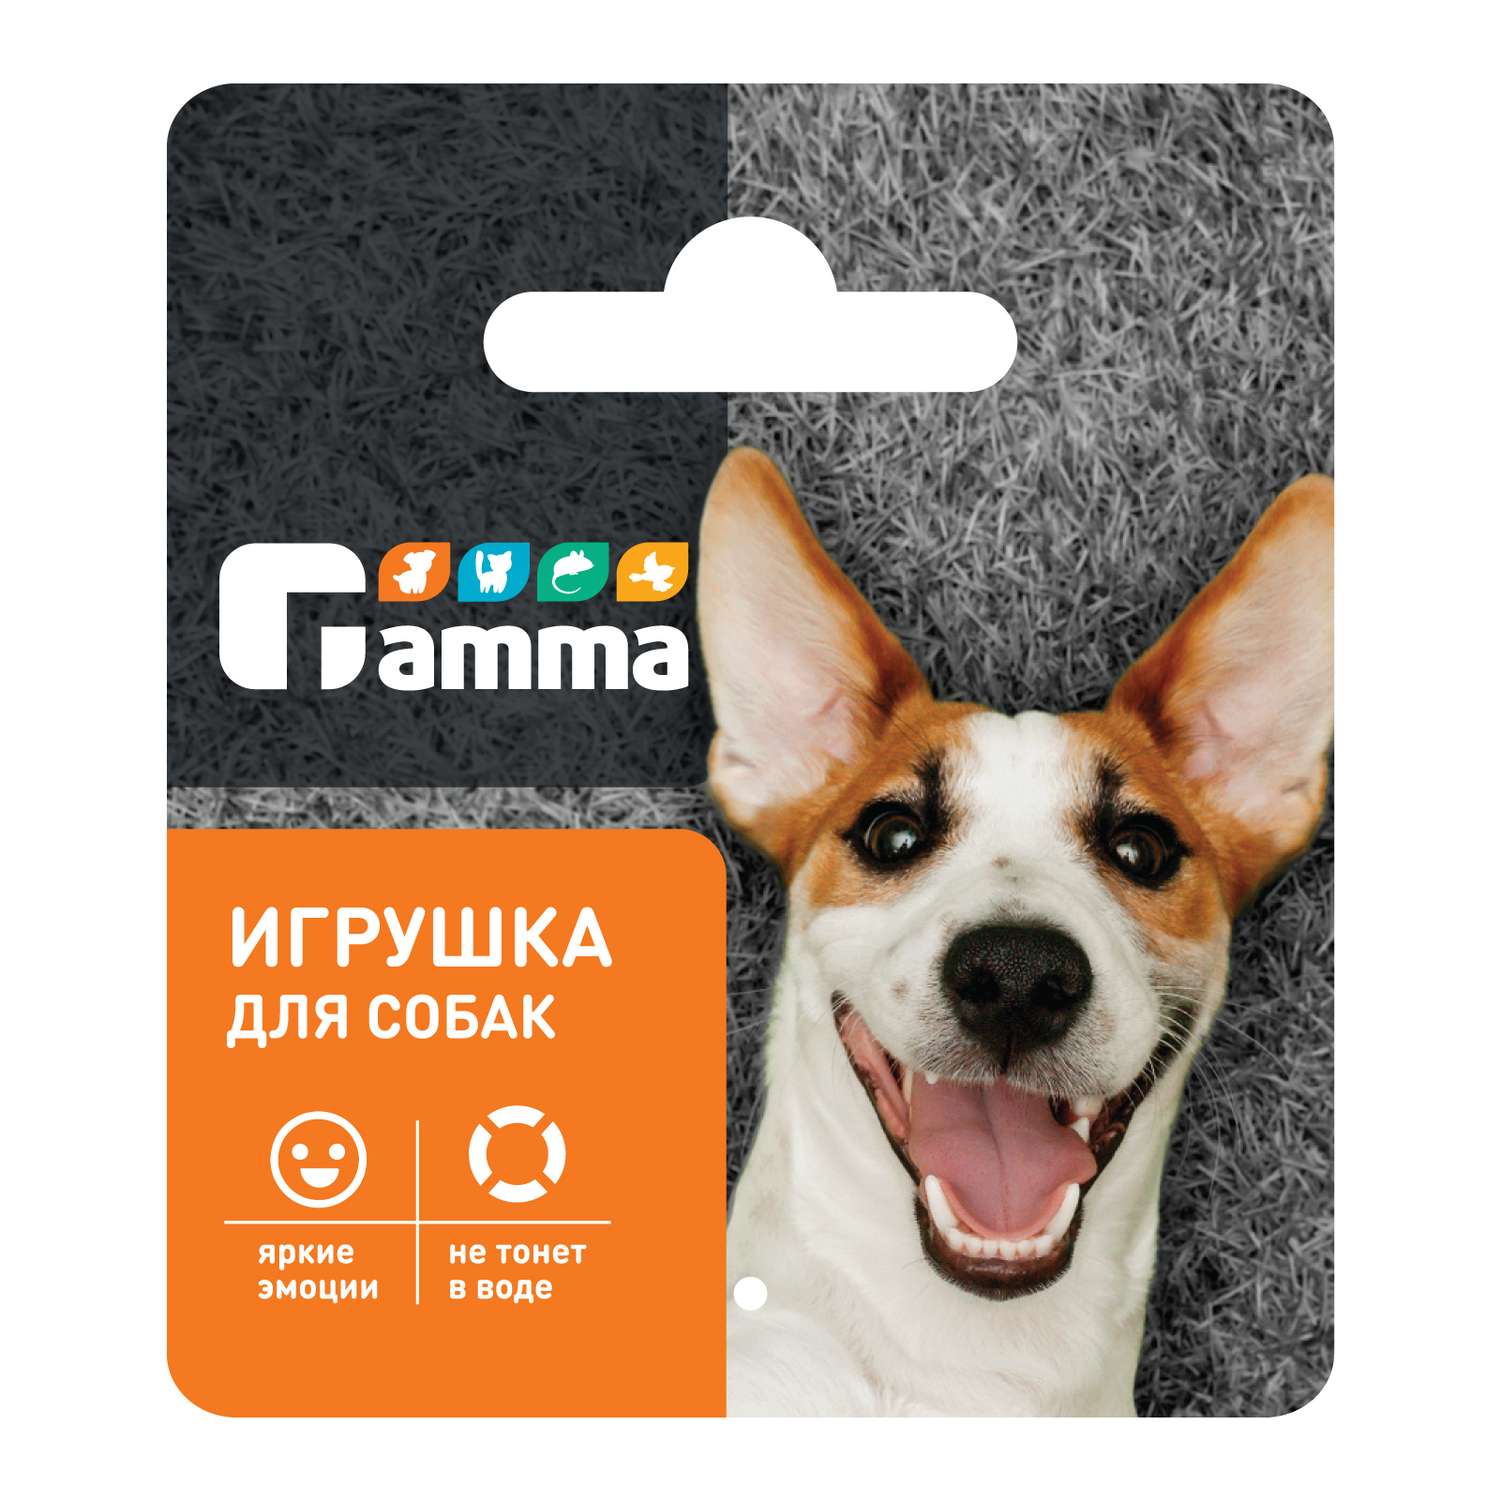 Игрушка для собак GAMMA Мяч M 85мм 12132003 - фото 2